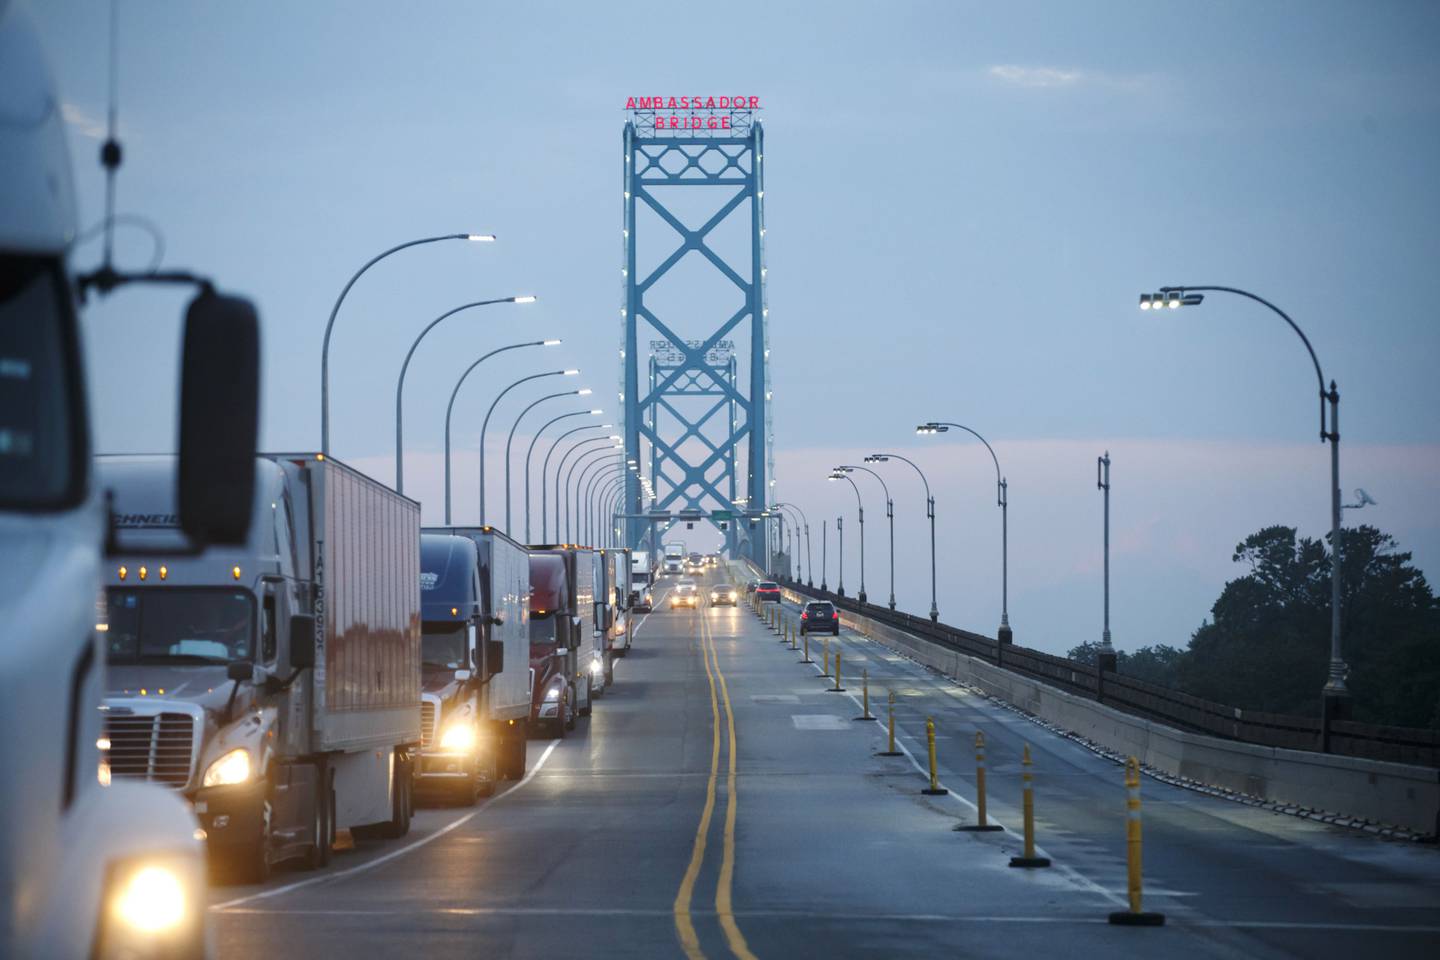 Camiones y vehículos de pasajeros atraviesan el puente Ambassador en la frontera entre Canadá y EE.UU.